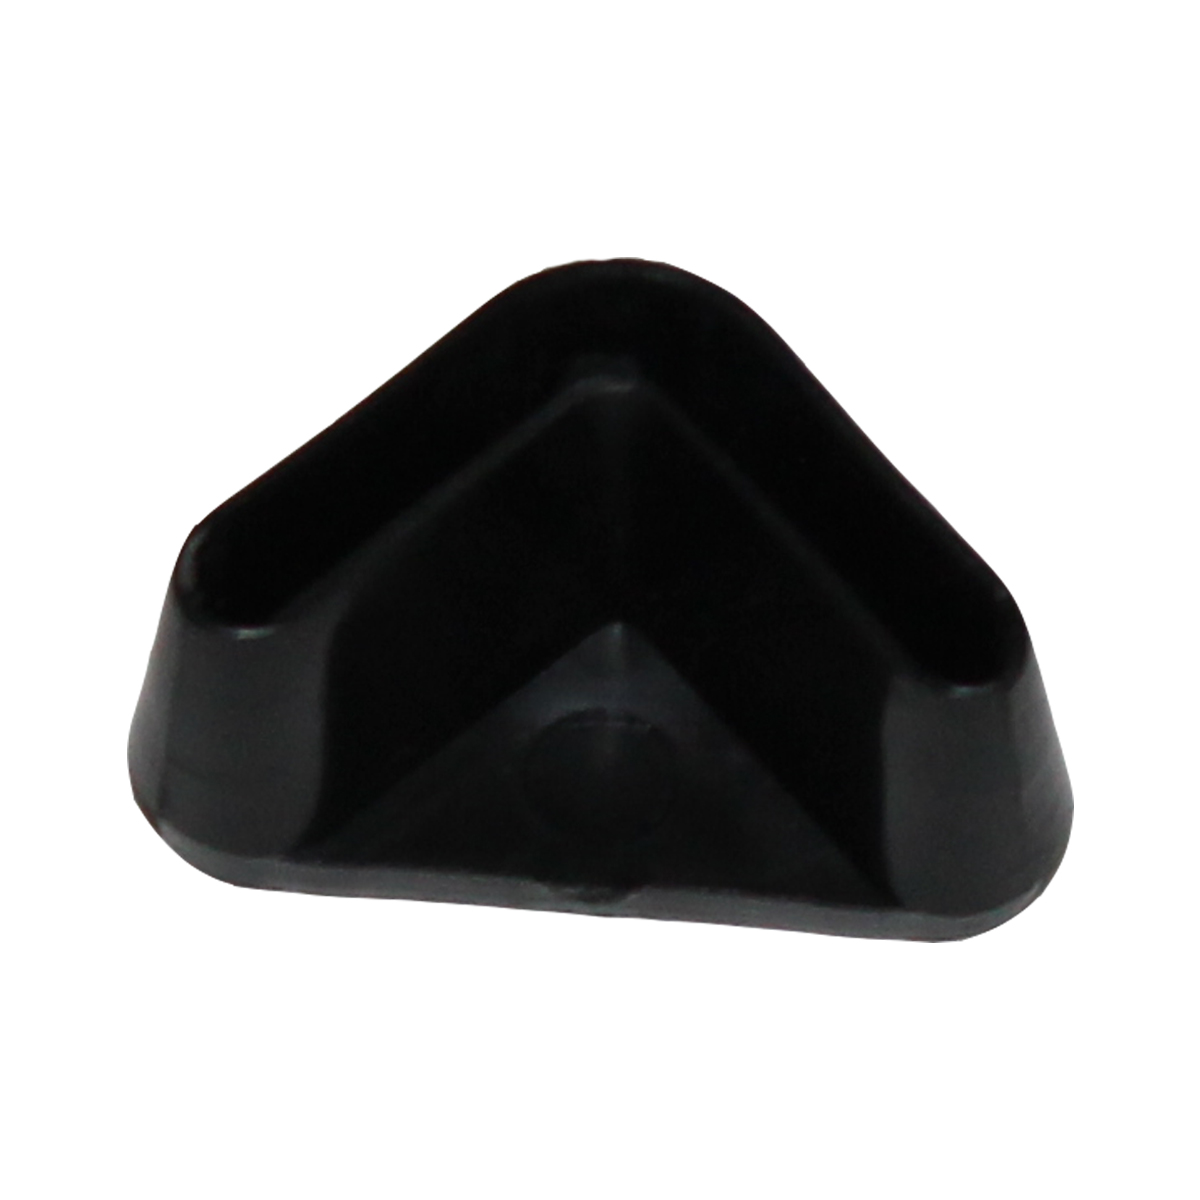 Подпятник для стеллажа. Треугольный подпятник-заглушка пластиковый 5020. Подпятник грибок d9 d22 ПНД. 150.00.033-1а колпак защитный. Подпятник для стула Пинин.